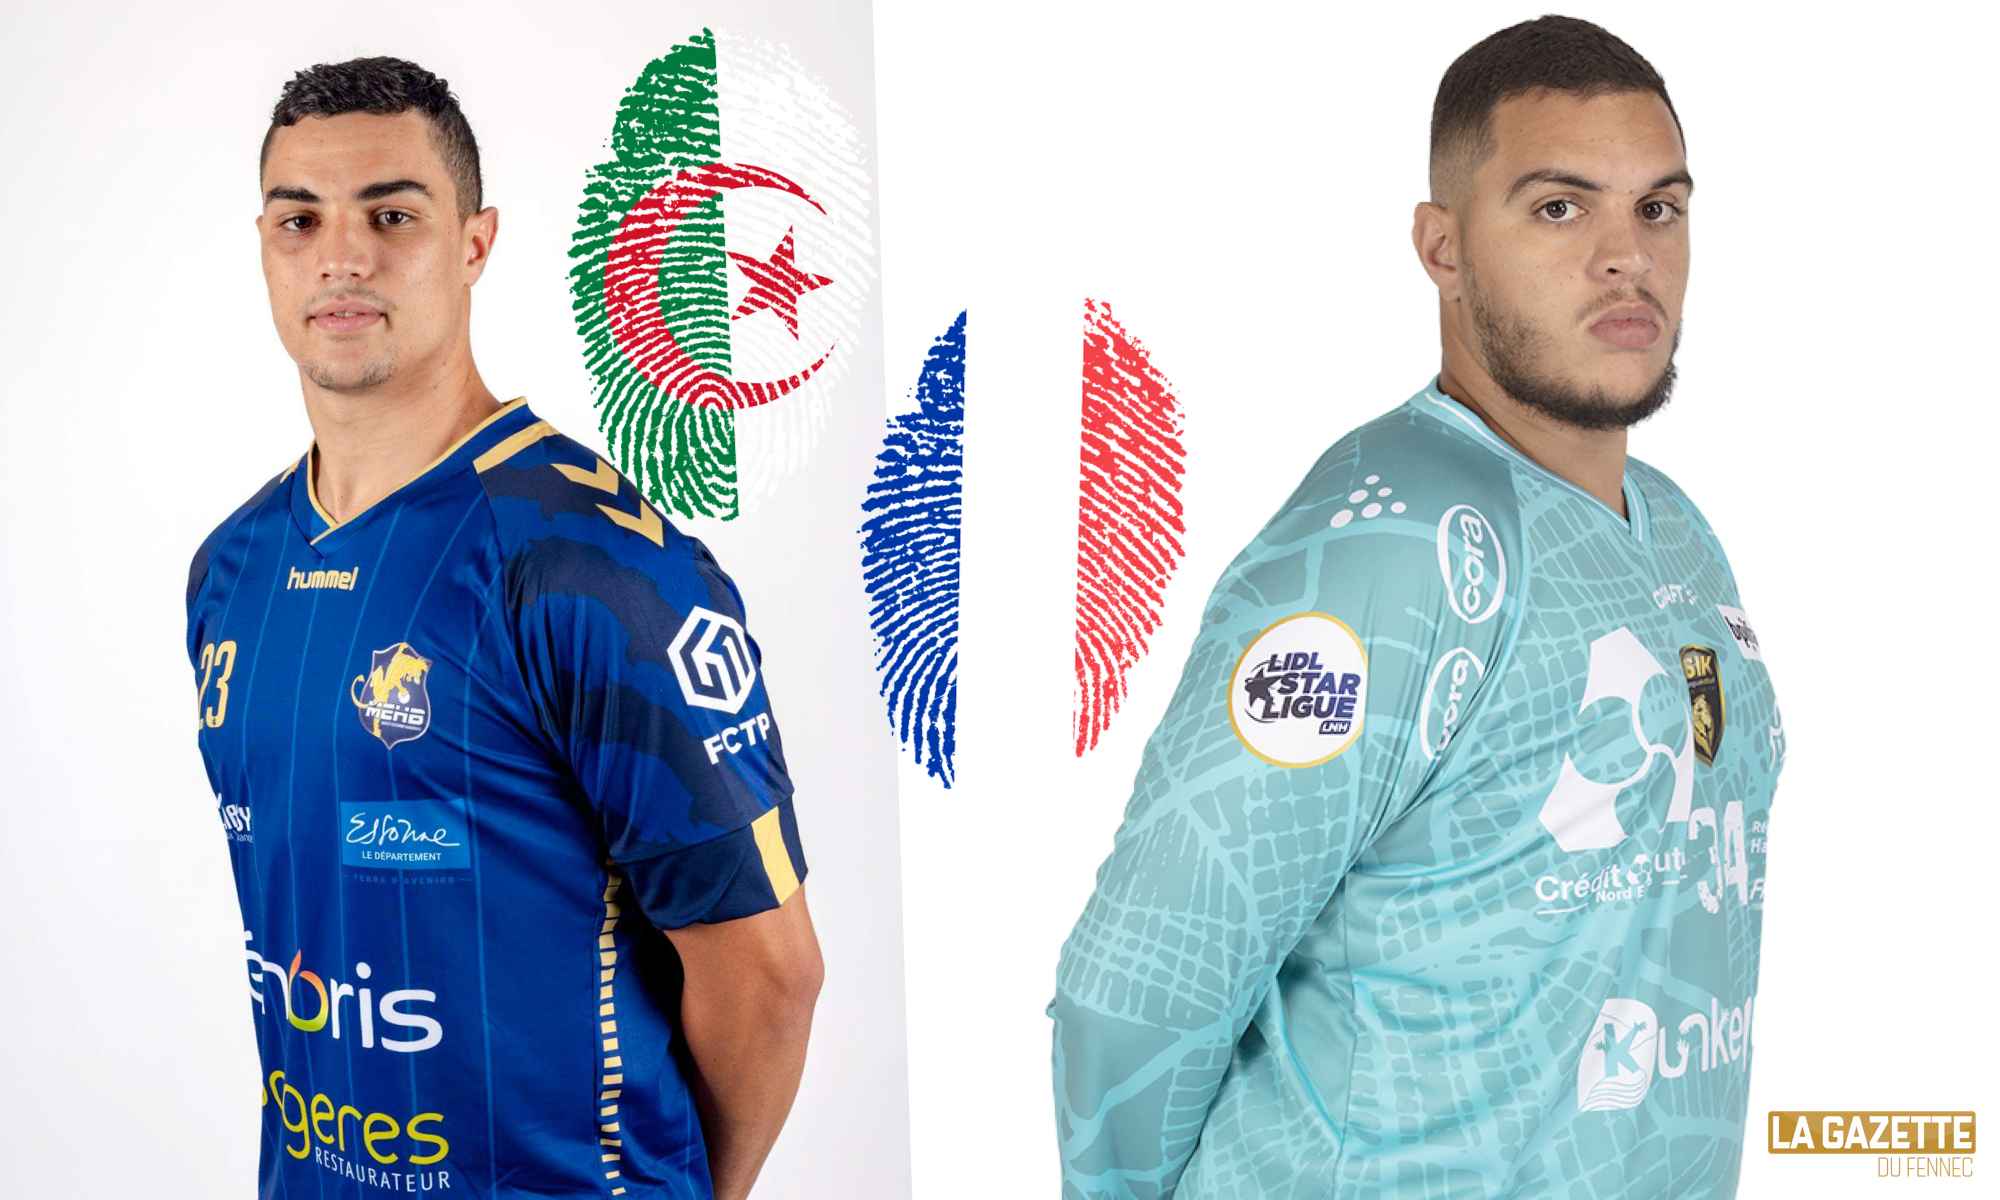 nassim samir bellahcene france frere algerie handball